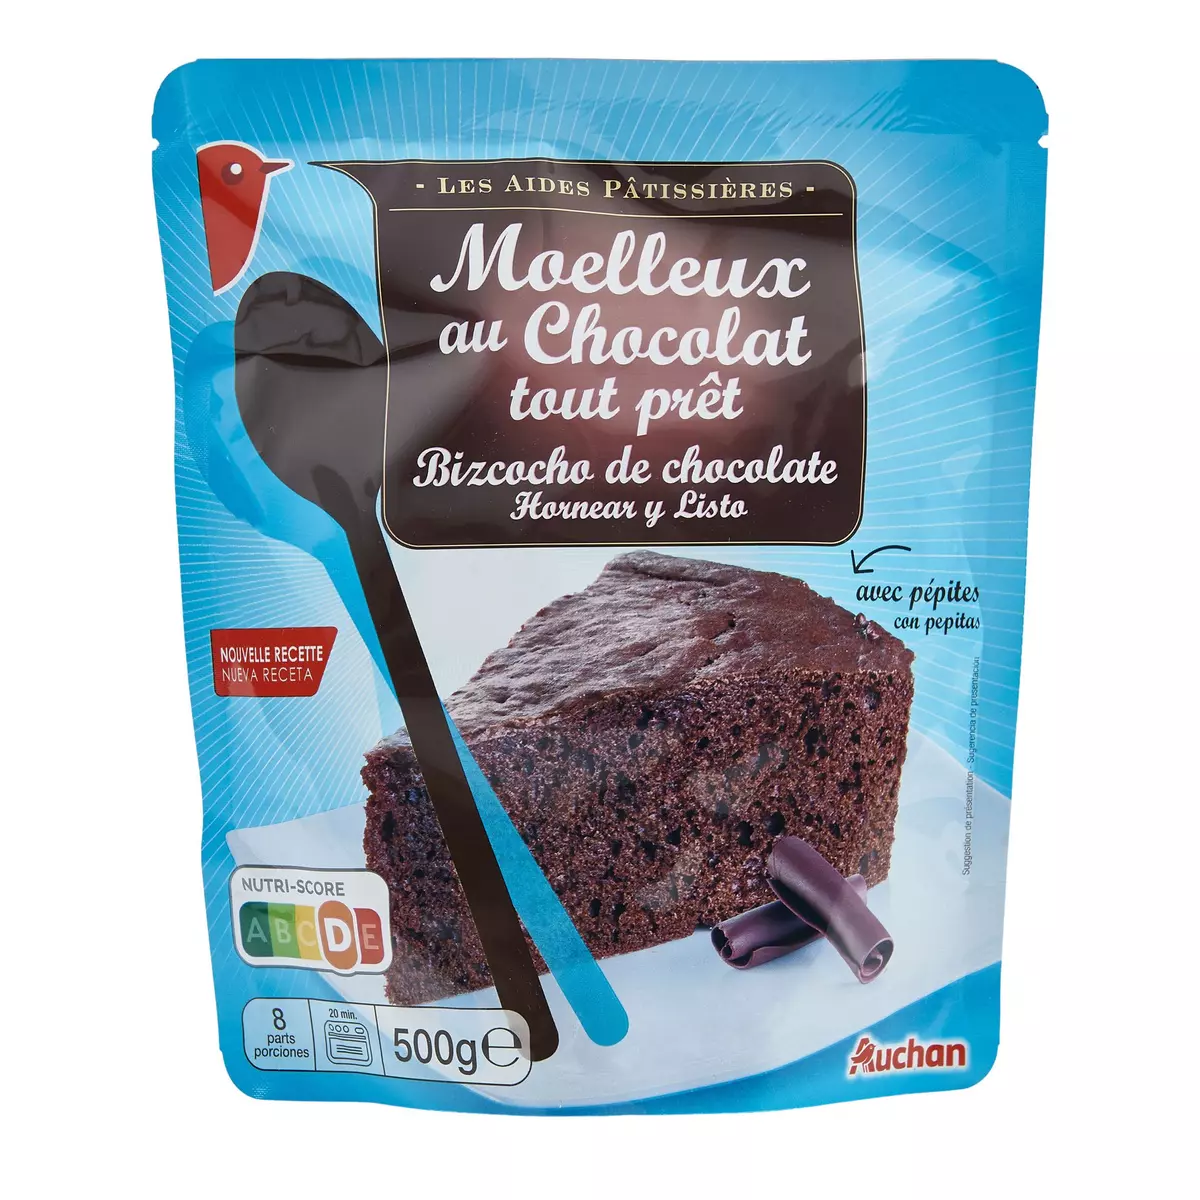 AUCHAN Moelleux au Chocolat tout prêt 8 parts 500g